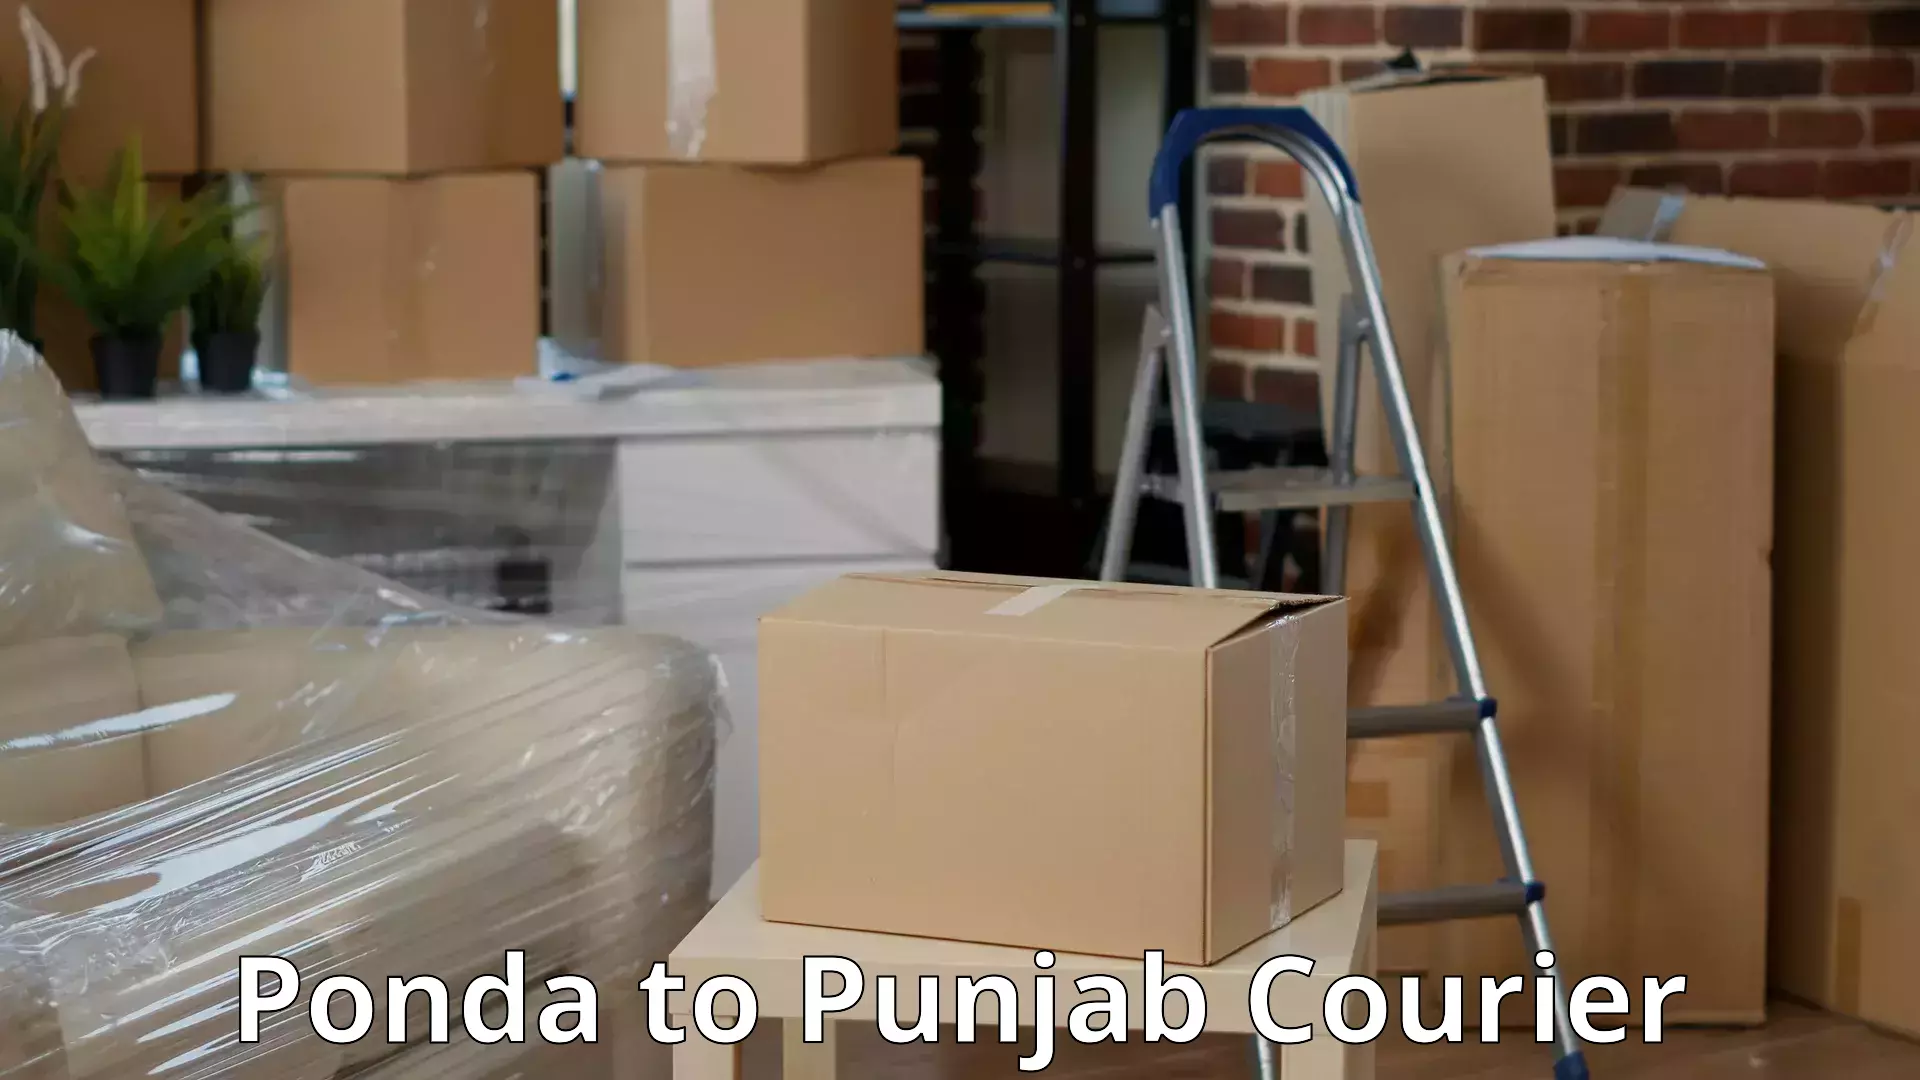 Furniture moving experts Ponda to Punjab